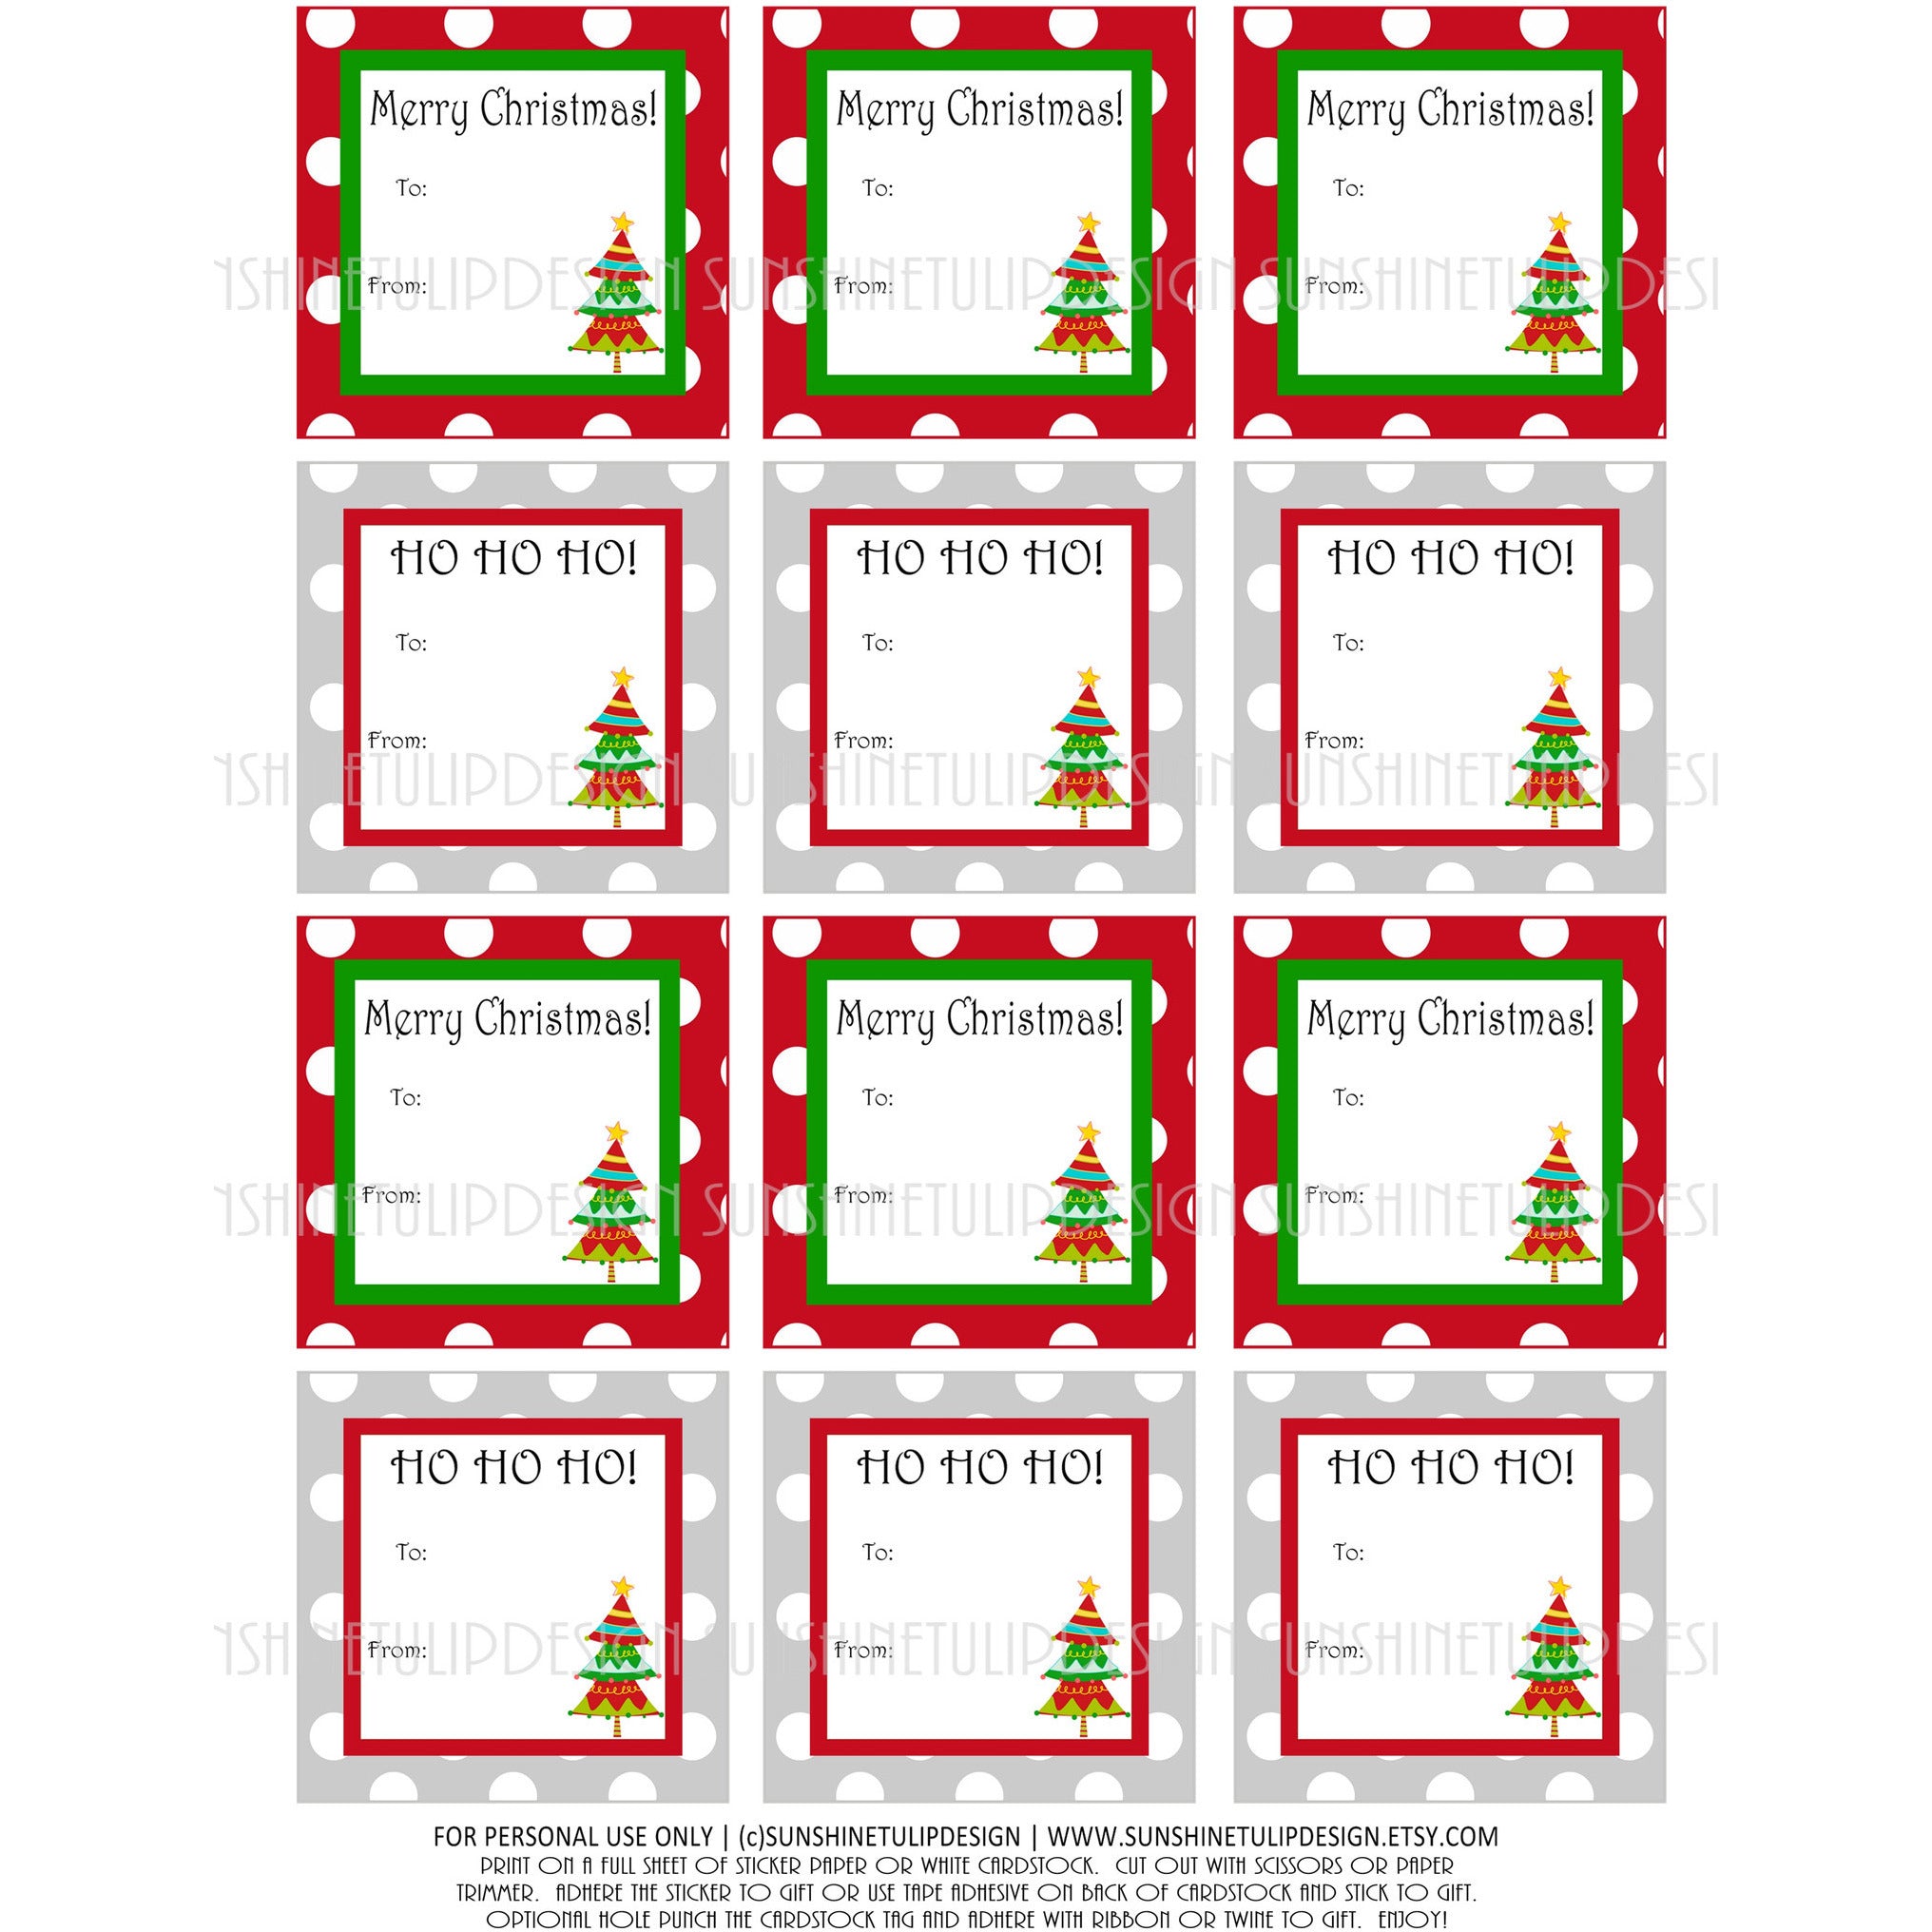 Printable Christmas Gift Tags, Gift Tags for Christmas, Teacher